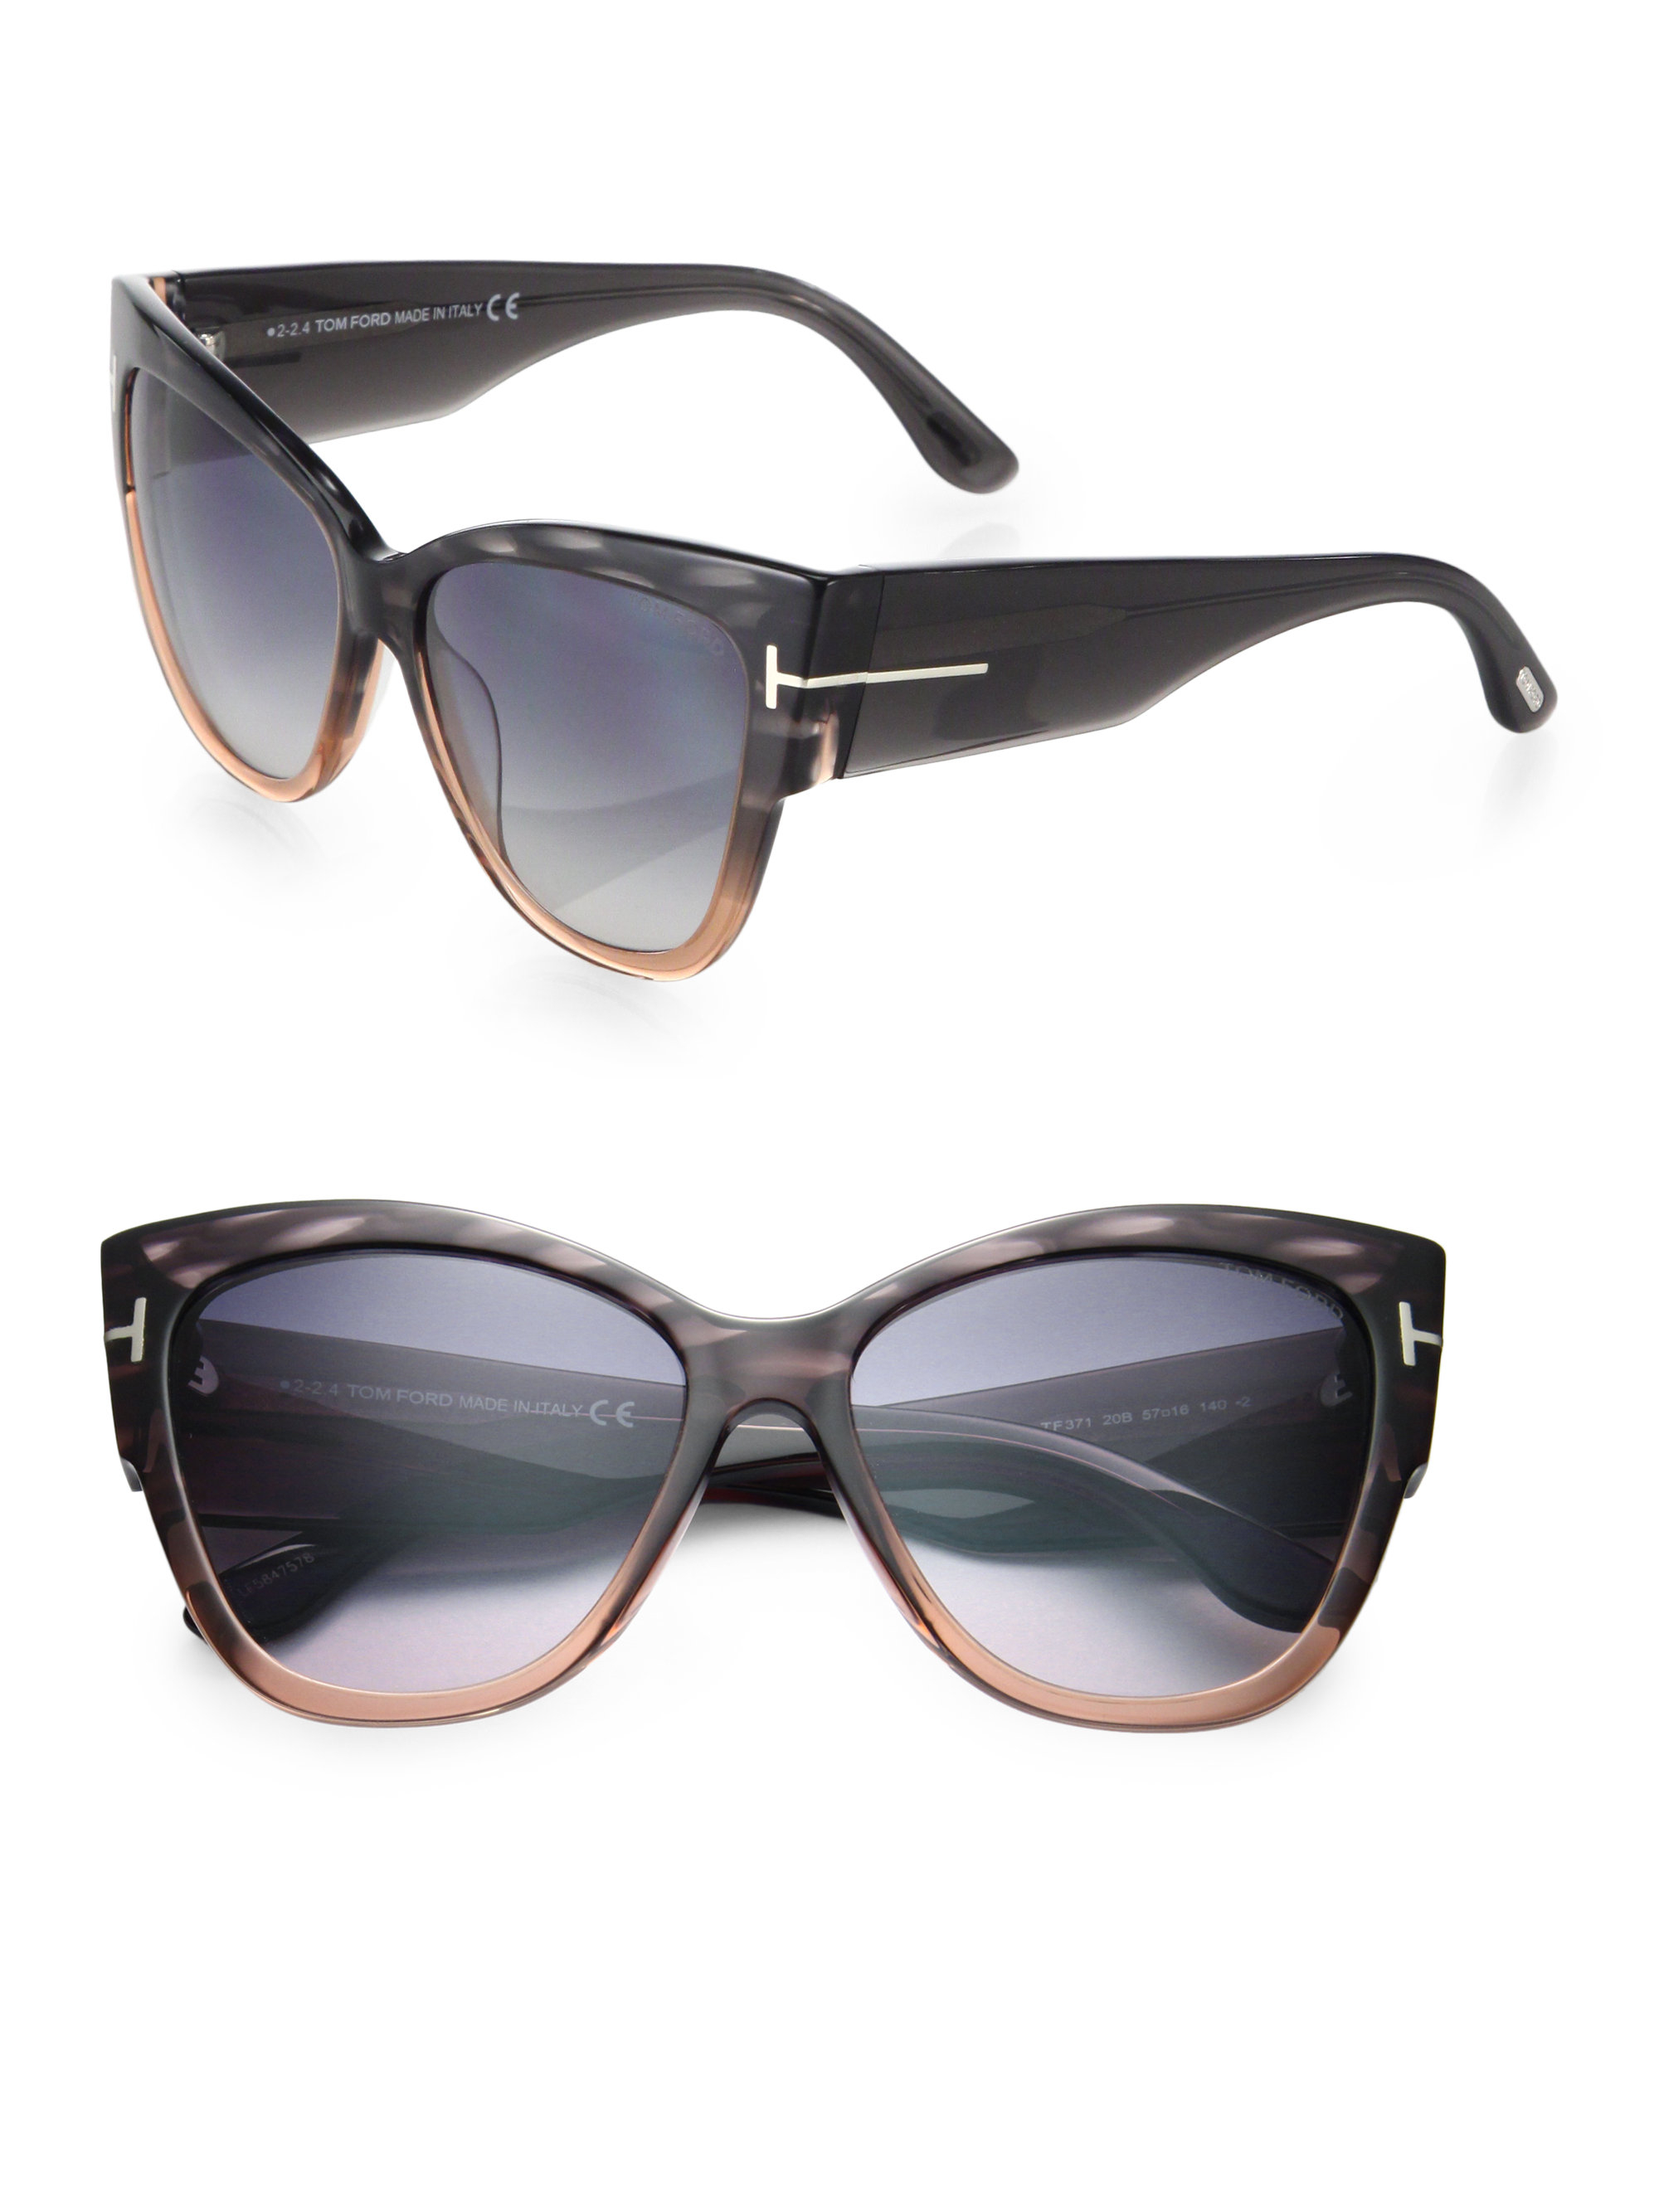 Tom ford Anoushka 57mm Cat's-eye Sunglasses in Black | Lyst